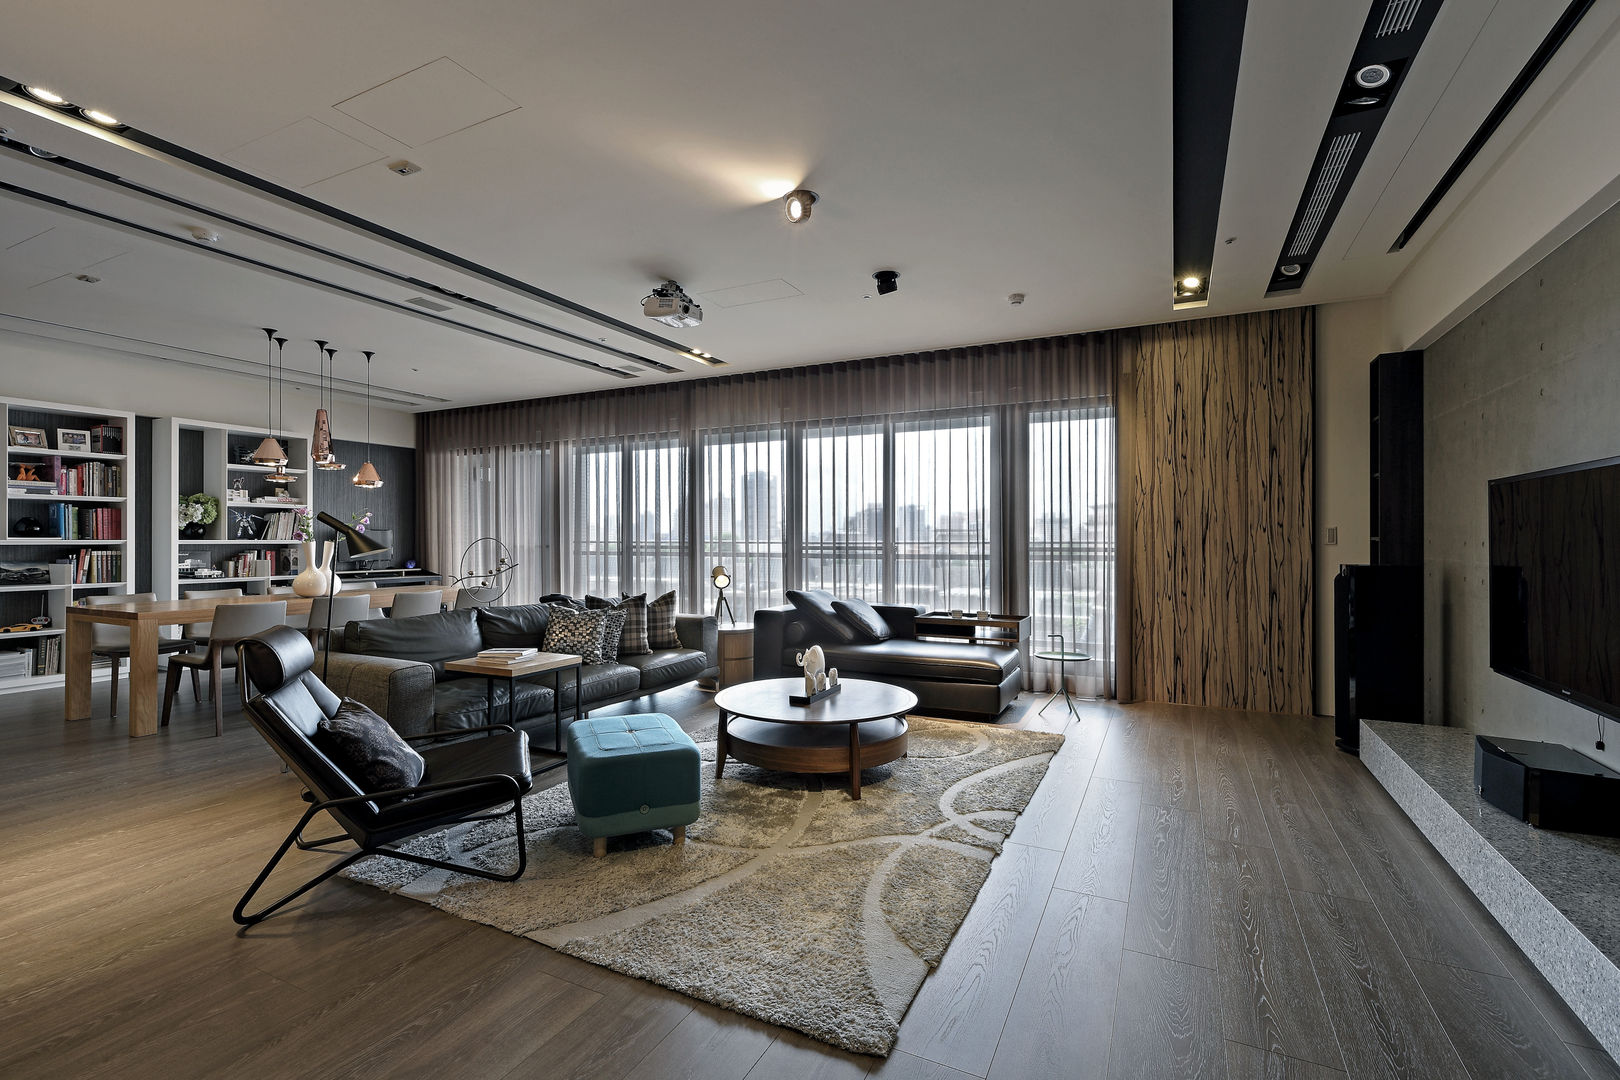 由鉅三希 5F, 台中室內設計-築采設計 台中室內設計-築采設計 Modern living room